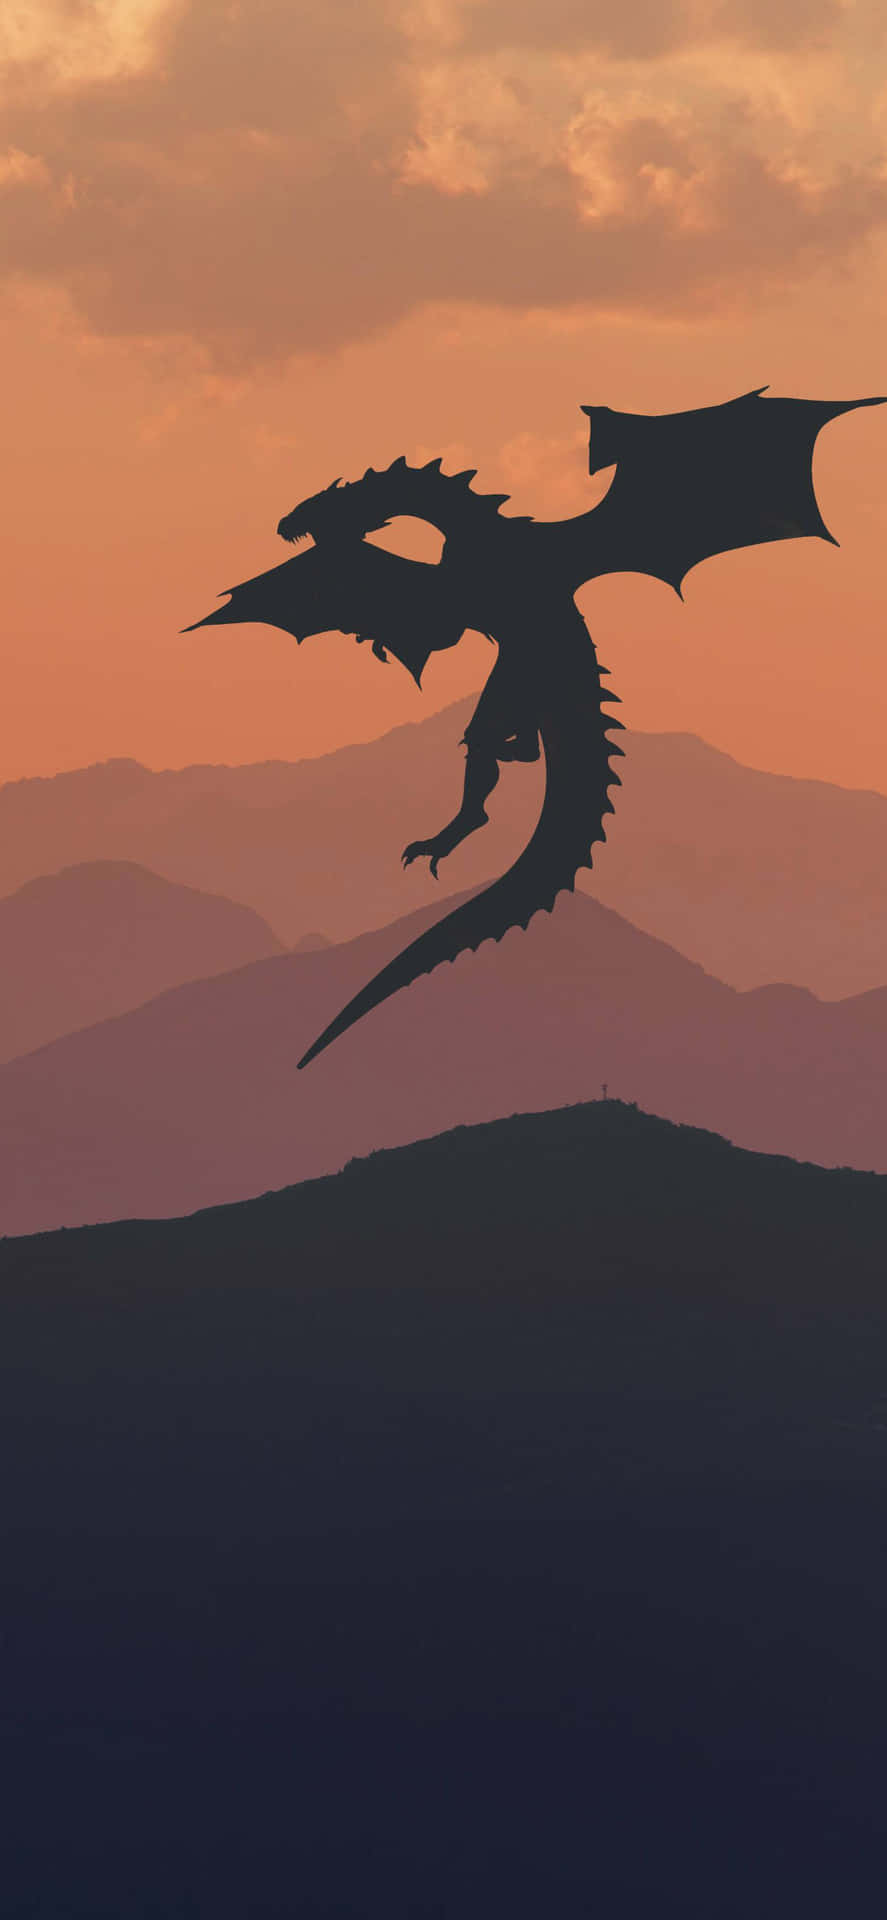 Erkundensie Die Welt Von Westeros Aufs Neue Mit Dem Game Of Thrones Iphone. Wallpaper